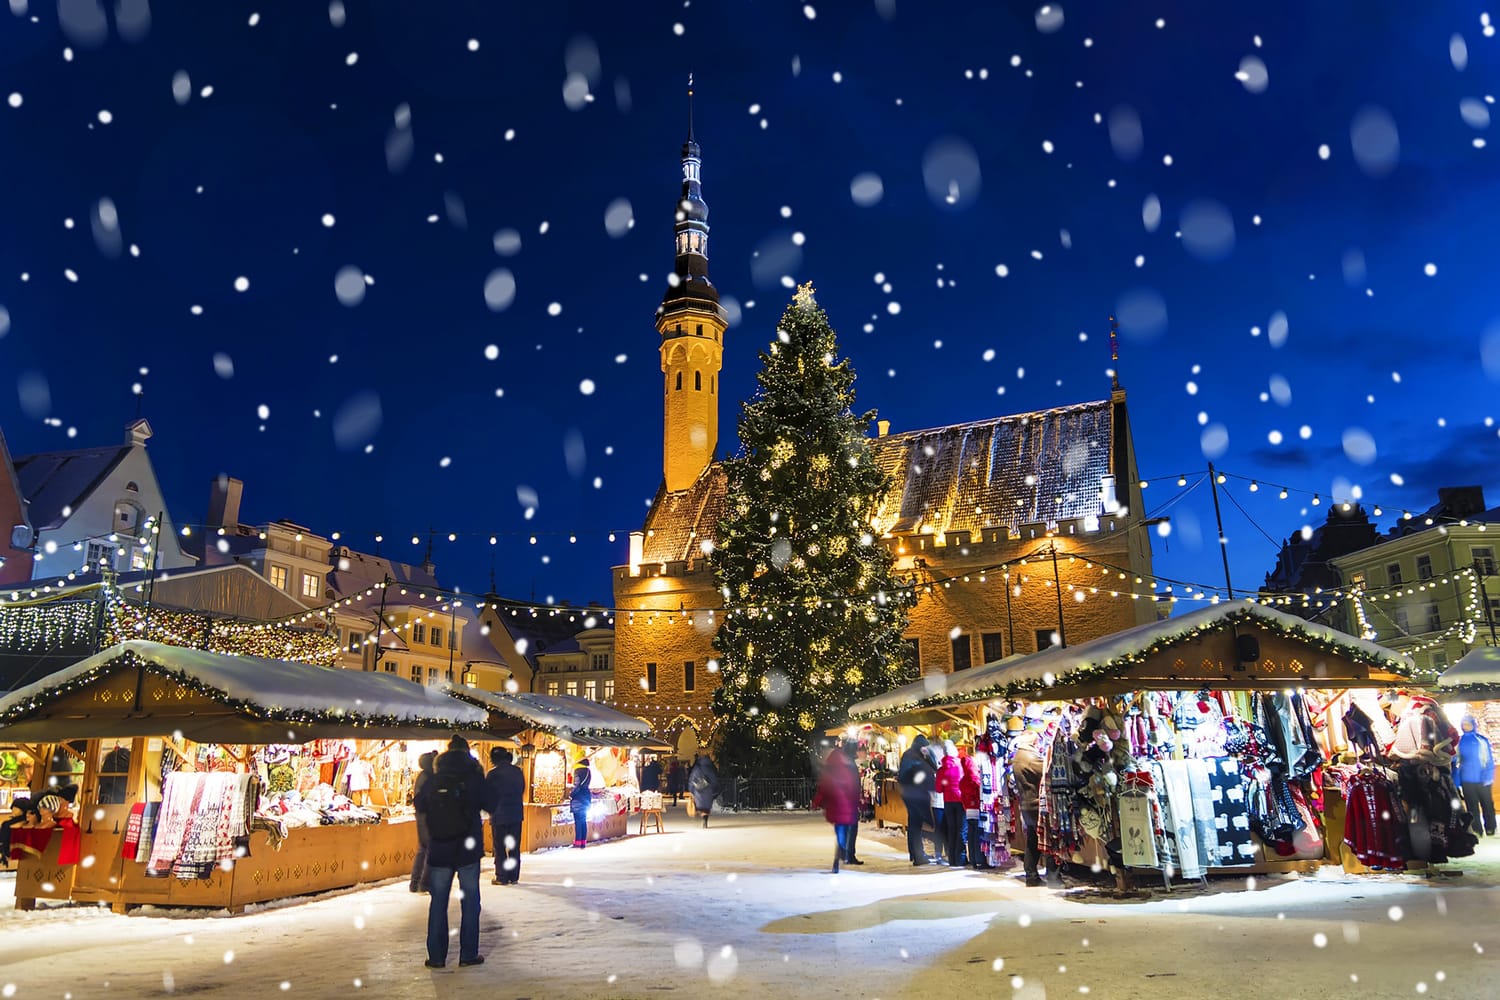 Christmas market in Tallinn, Estonia